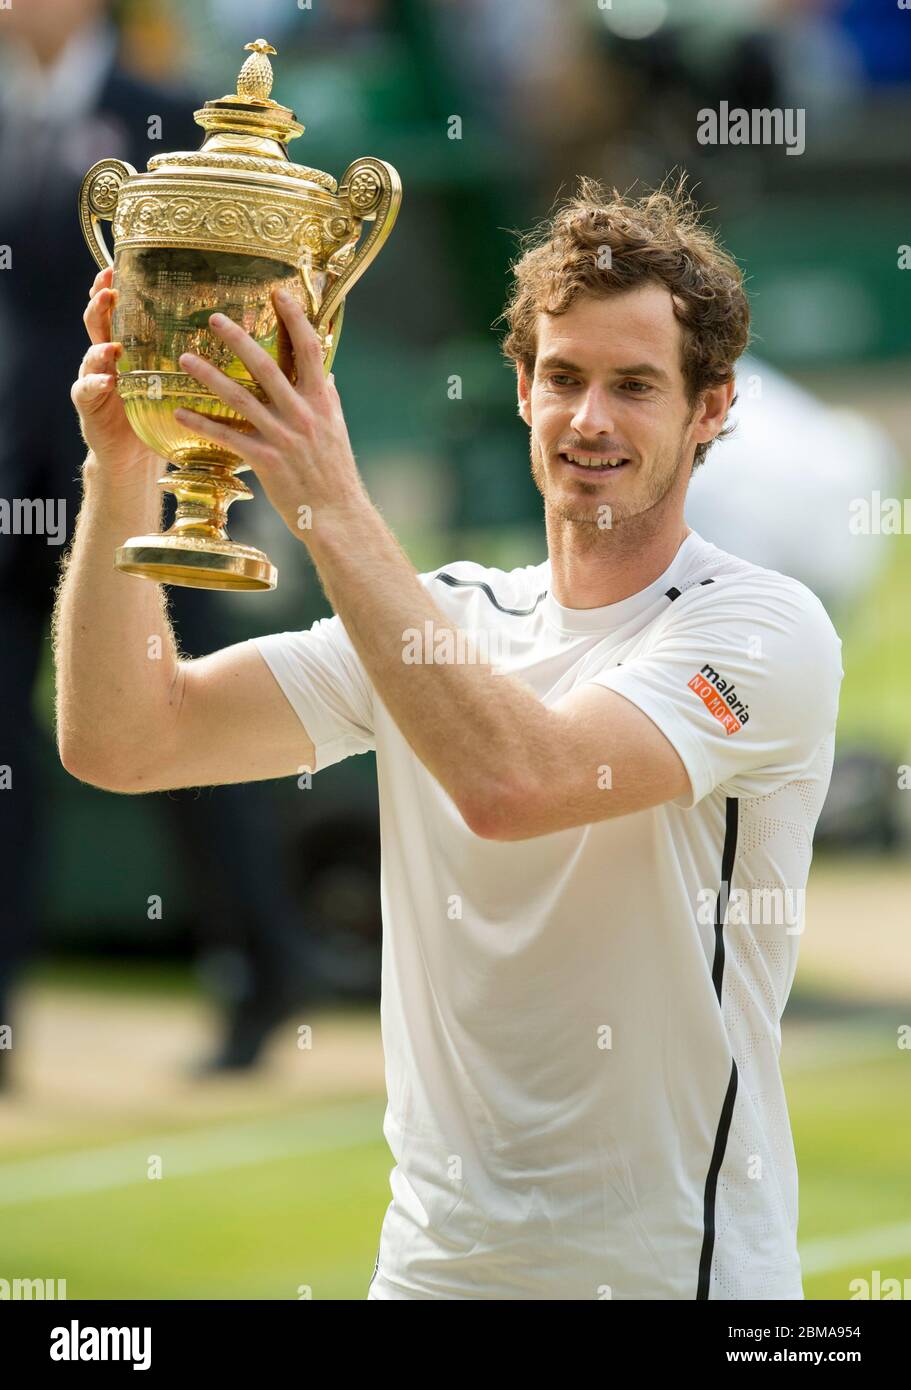 10 juillet 2016, Wimbledon, Londres: Mens Singles final, Centre court, Andy Murray détient le trophée Wimbledon après avoir battu Milos Raonic du Canada. Banque D'Images